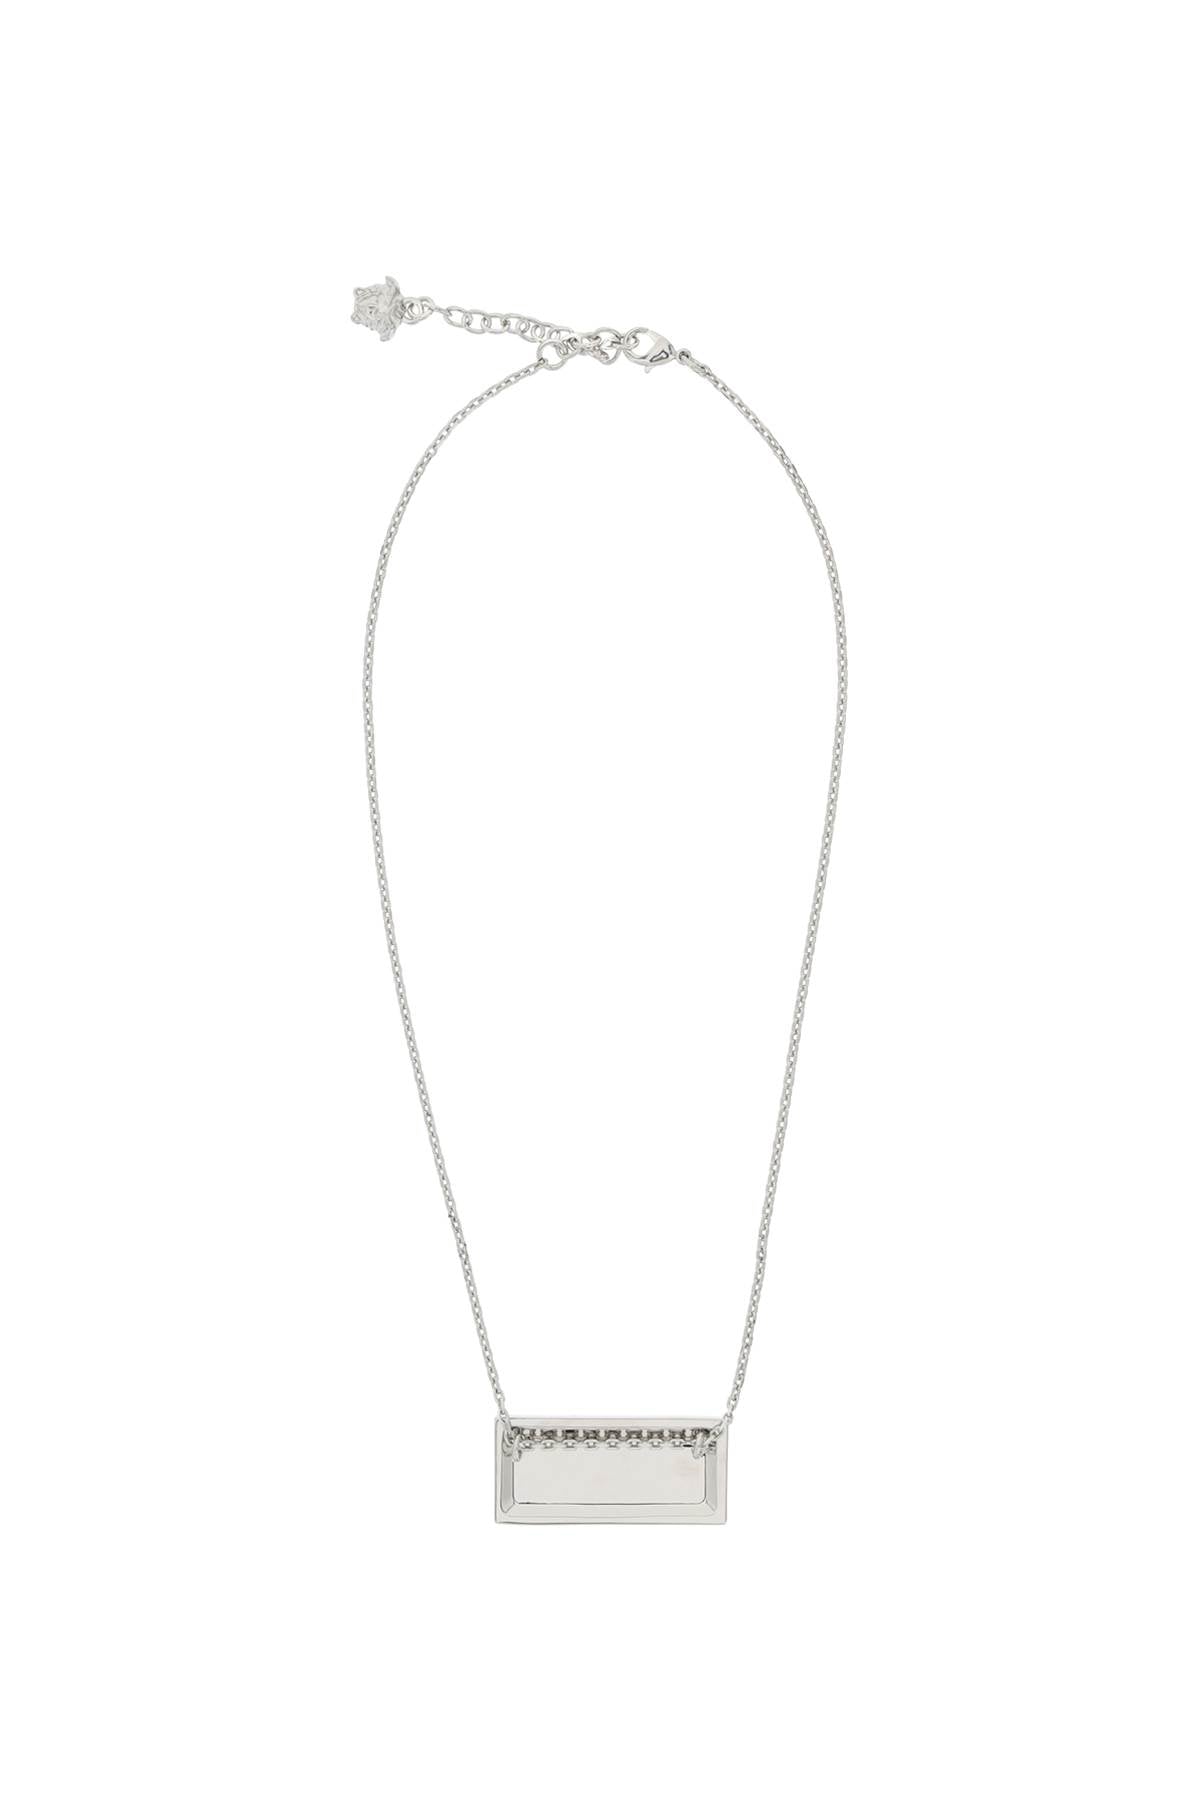 Versace 90's Vintage Logo Necklace   Silver